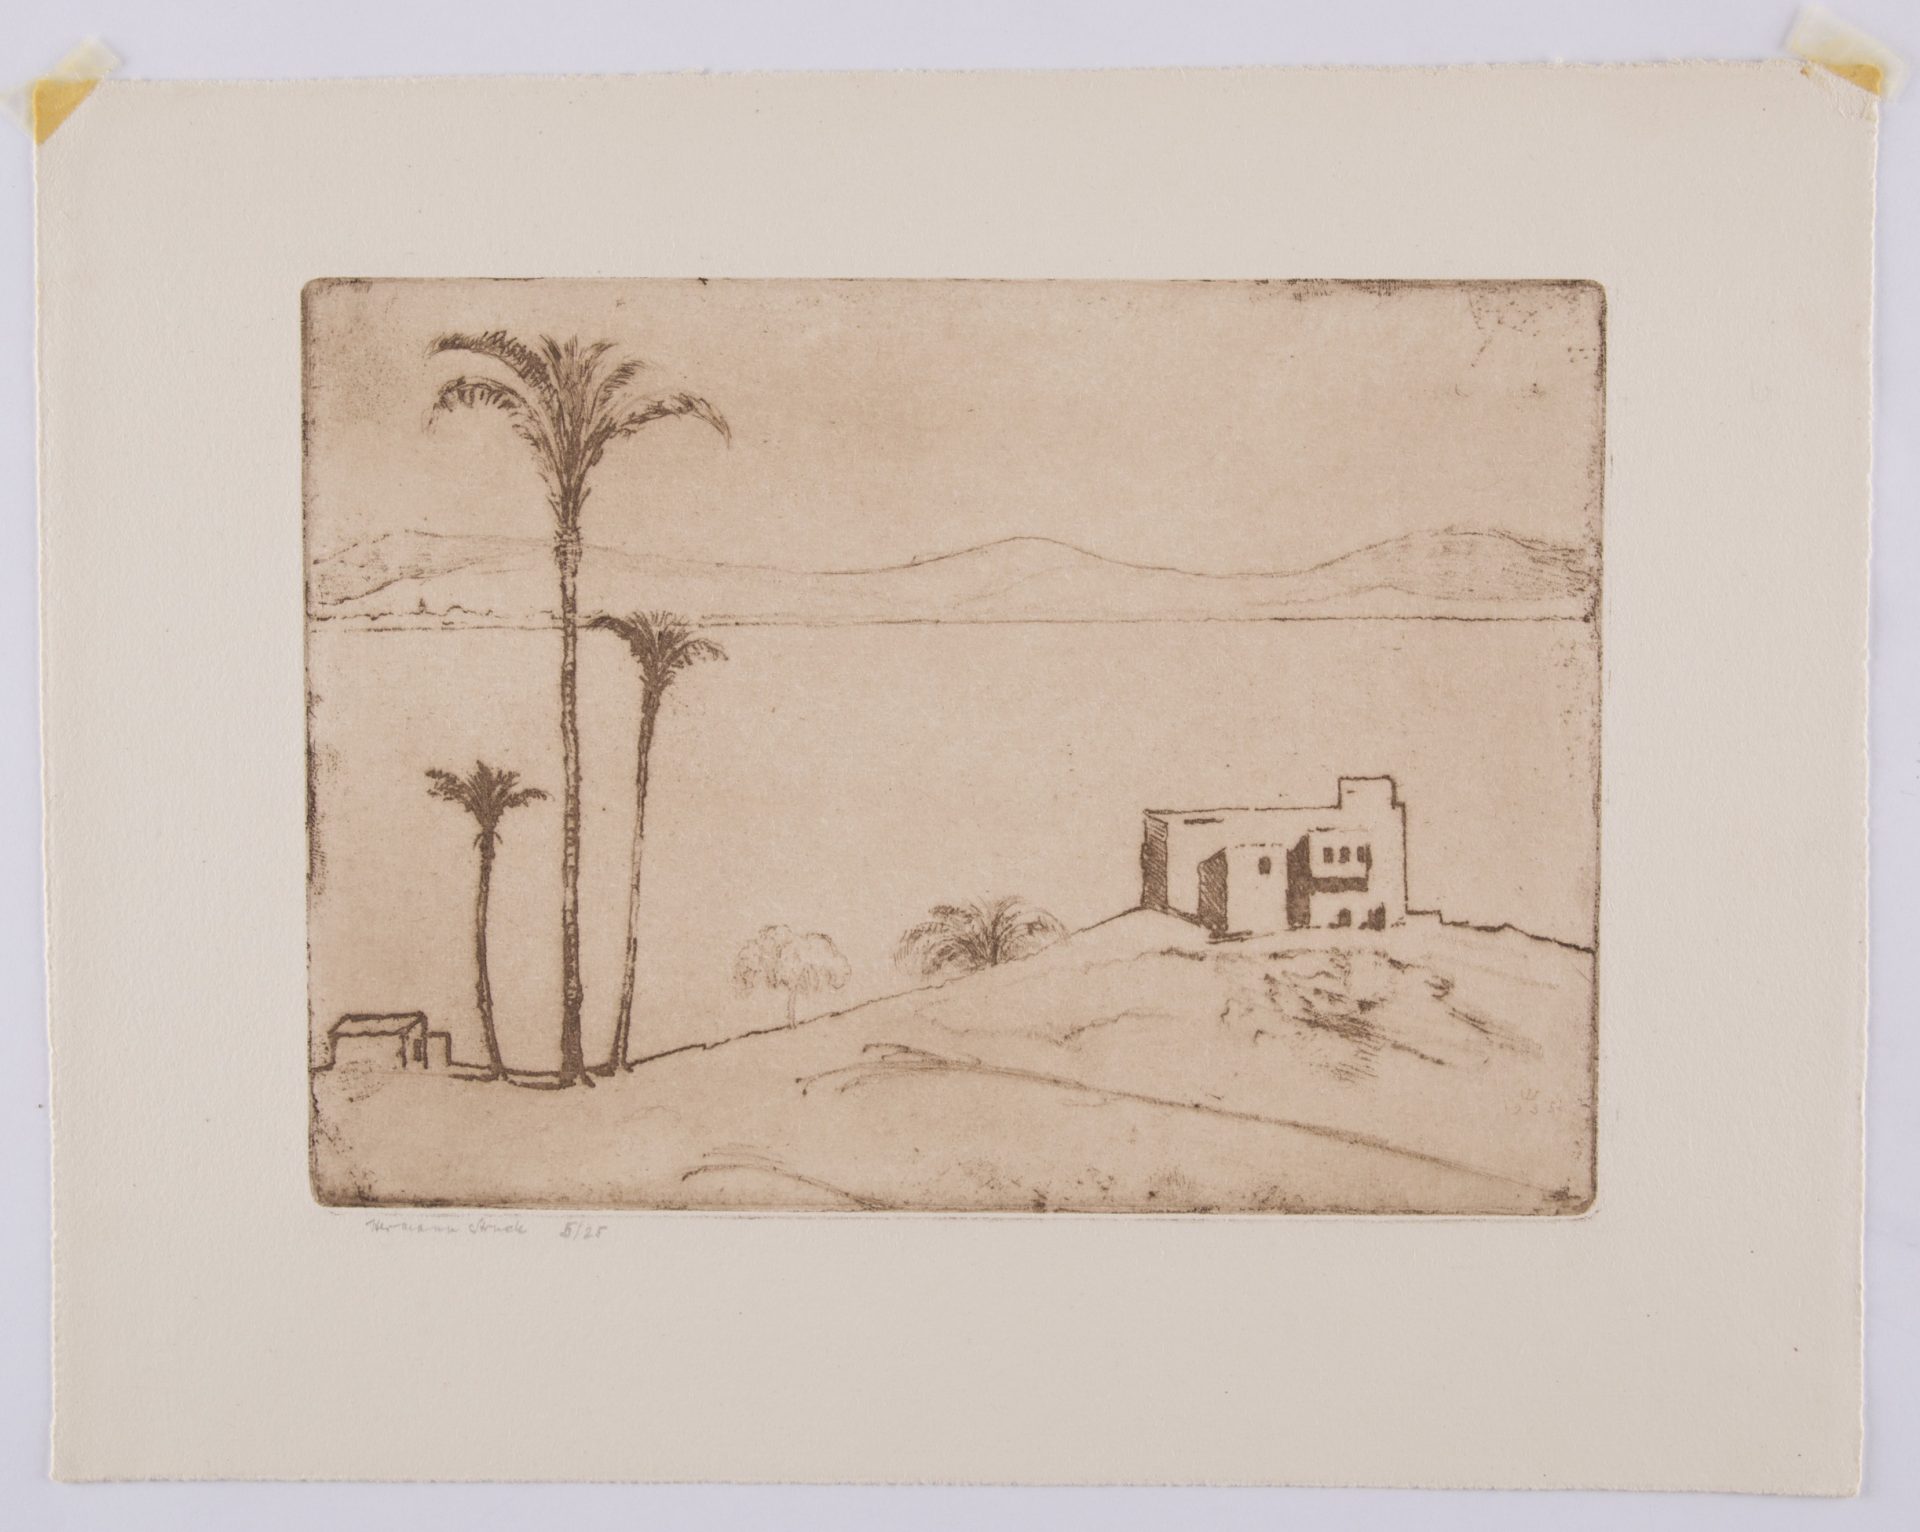 מתוך התערוכה "צל עץ תמר". הרמן שטרוק, חיפה, 1935